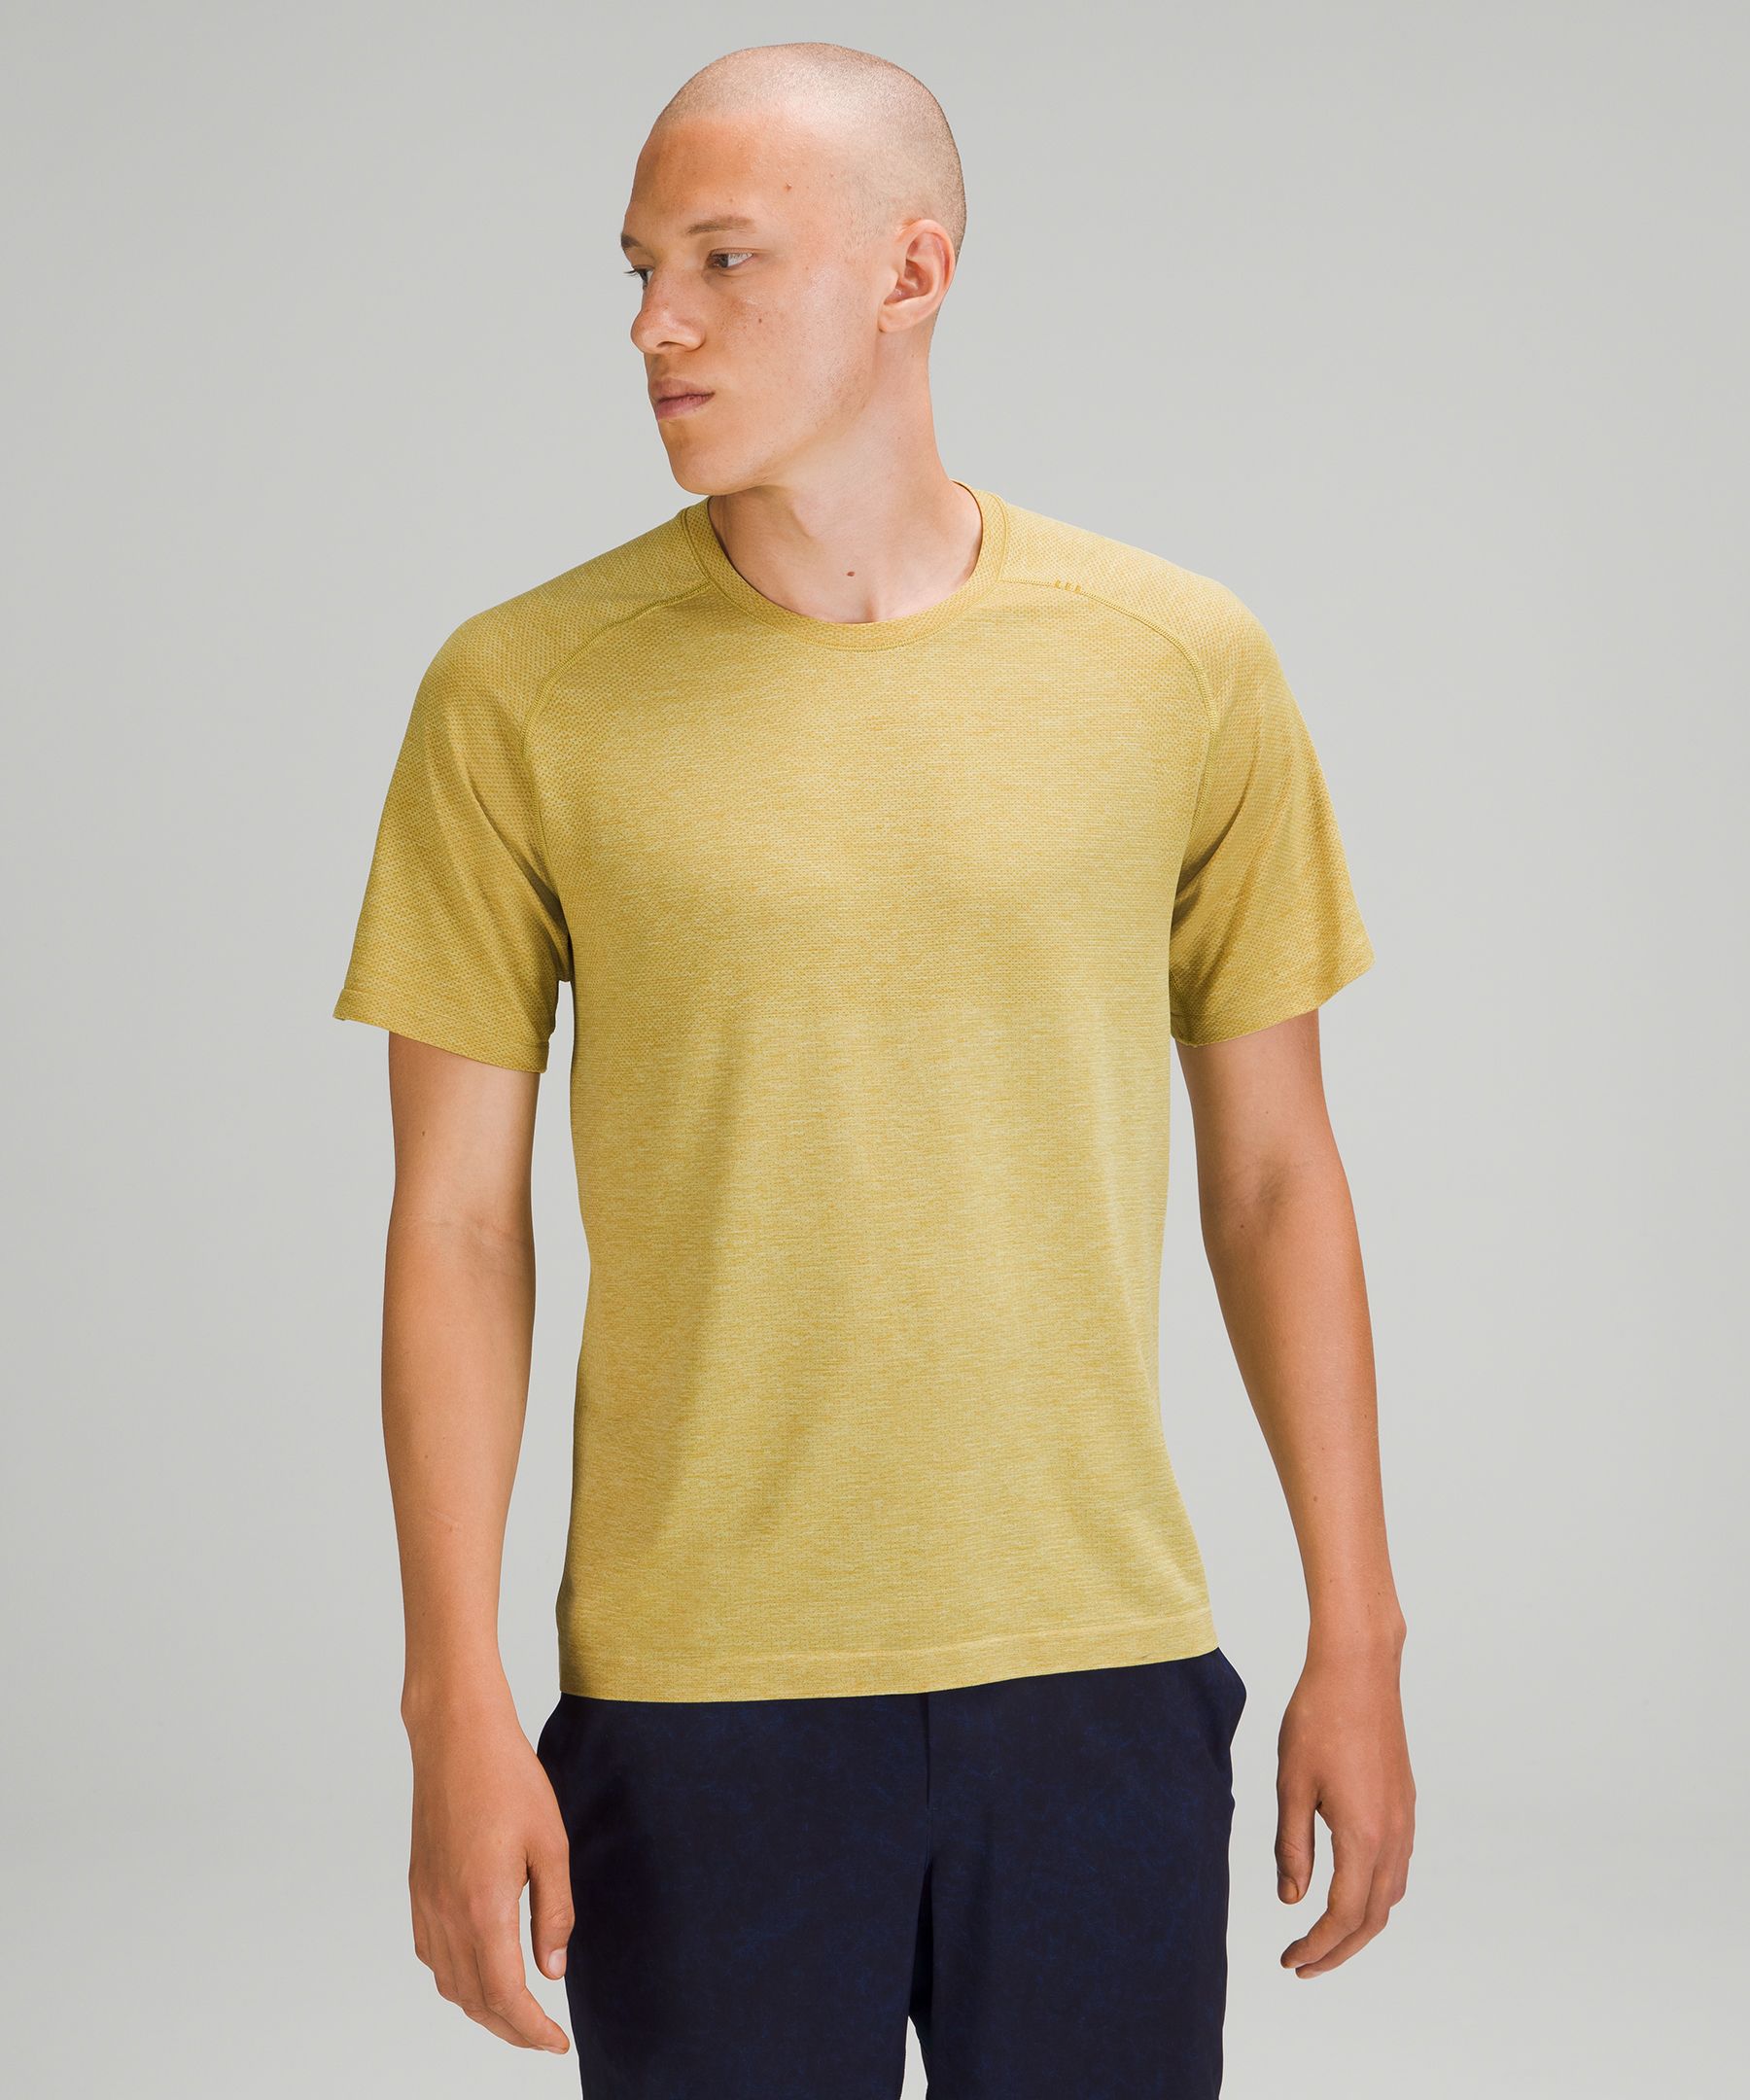 Lululemon Metal Vent Tech Short Sleeve Shirt 2.0 In Auric Gold/dew Green